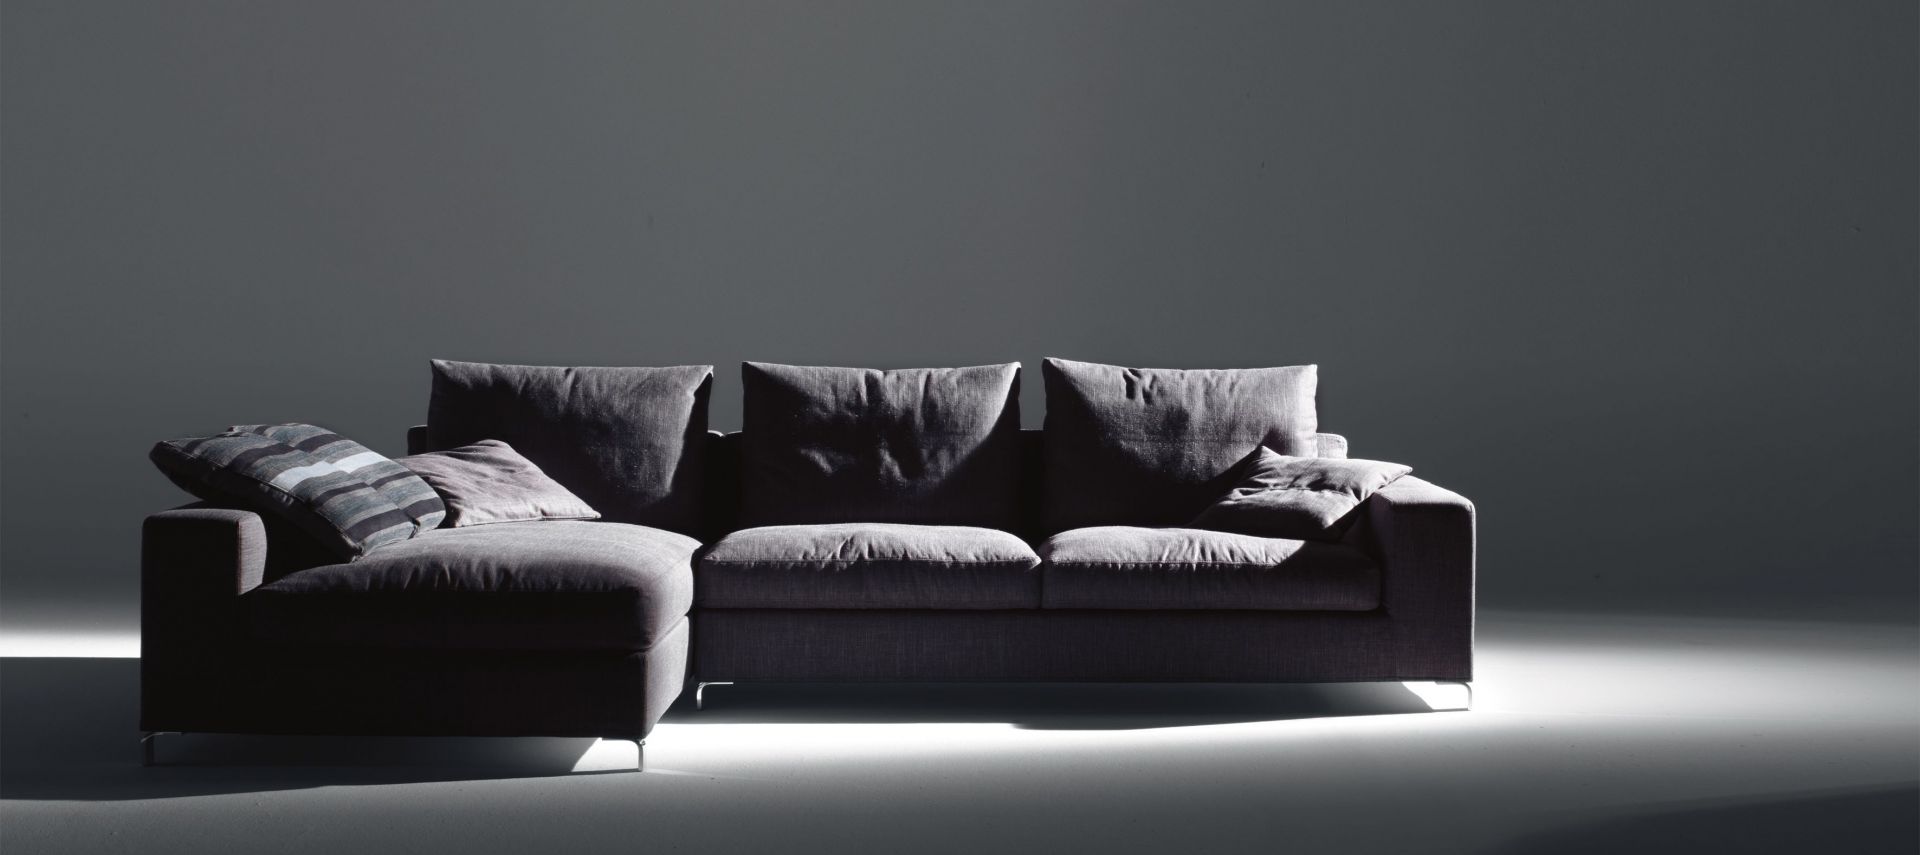 Sofa THOMAS została zaprojektowana przez STUDIO ARCHIMETA. Wykonana z innowacyjnych i naturalnych materiałów. Takie właściwości i dokładność tradycyjnych metod pracy, sprawia że sofa jest wytrzymała i wysokiej jakości.  Fot. Italia Style